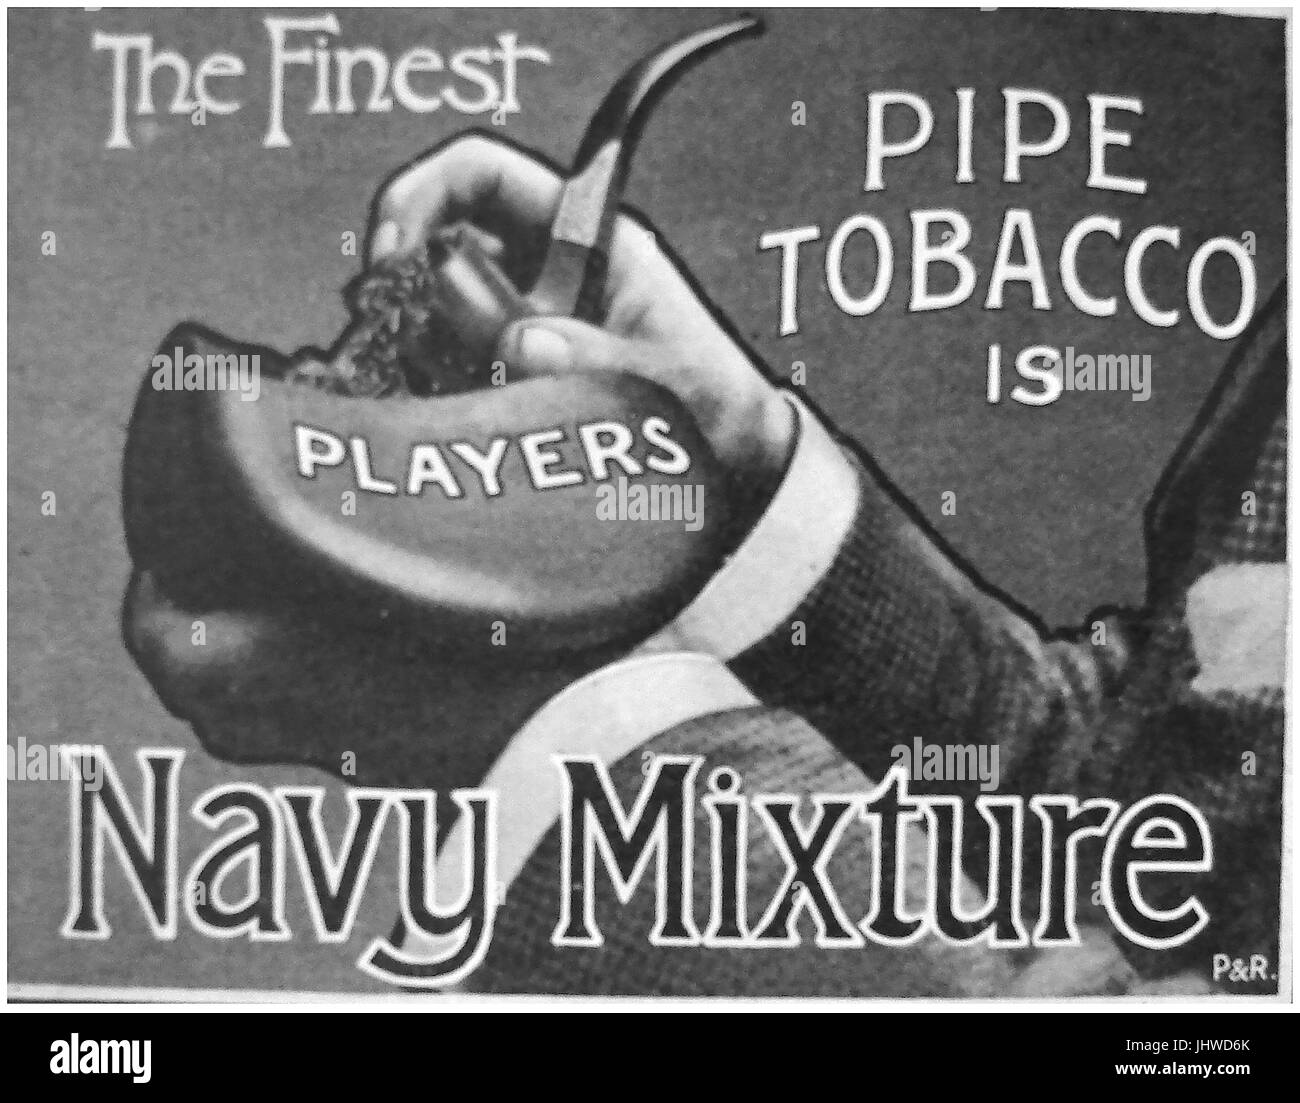 1920 publicité pour les joueurs mélange de tabac à pipe de la marine (UK) Banque D'Images